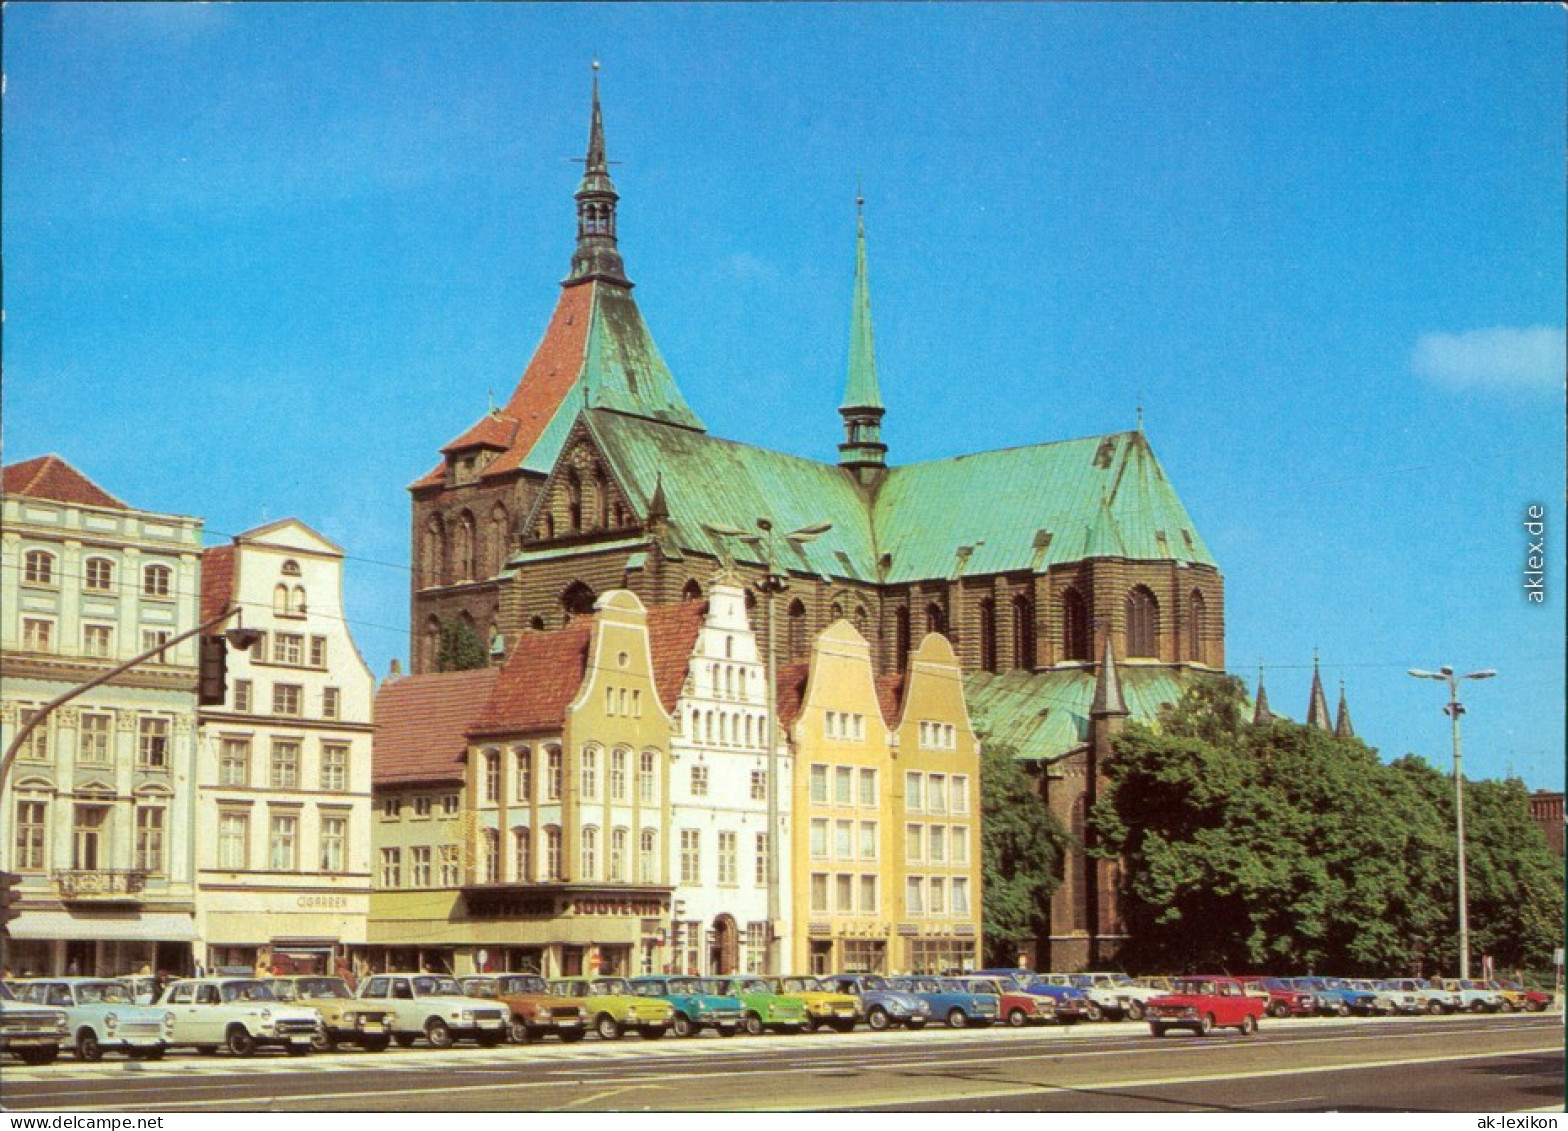 Ansichtskarte Rostock Neuer Markt - Marktplatz - Ernst-Thälmann-Platz 1981 - Rostock